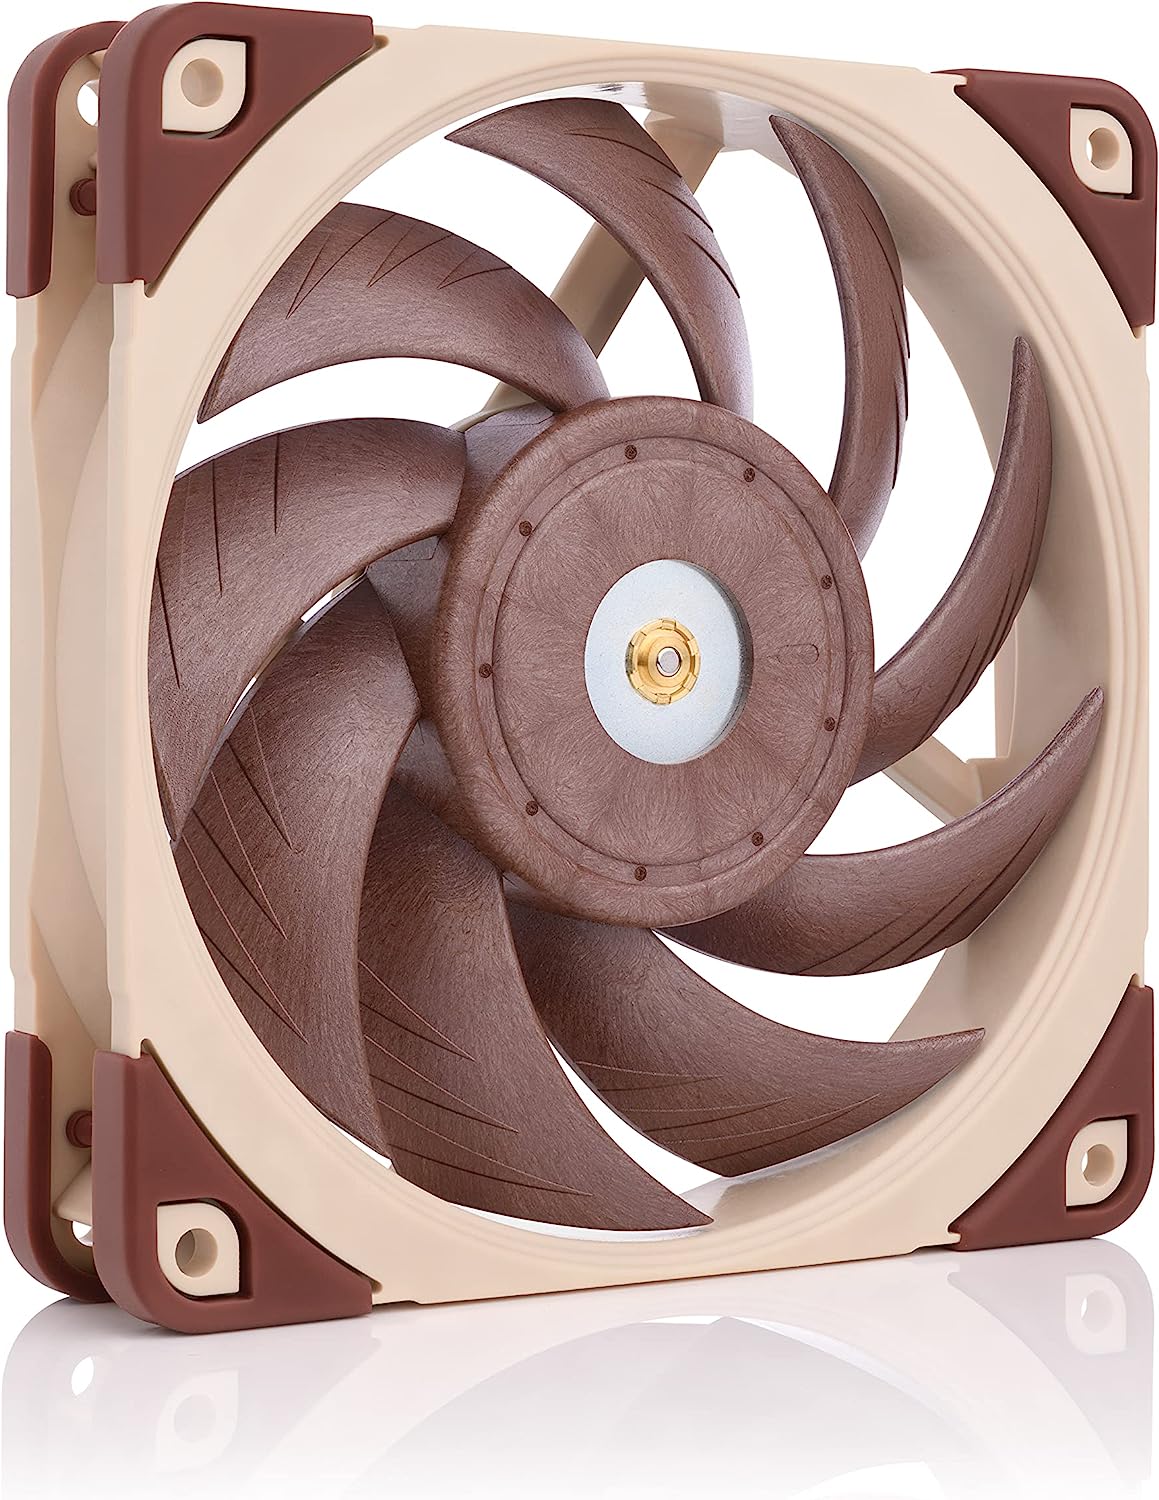 Noctua NF-A12x25 120mm fan